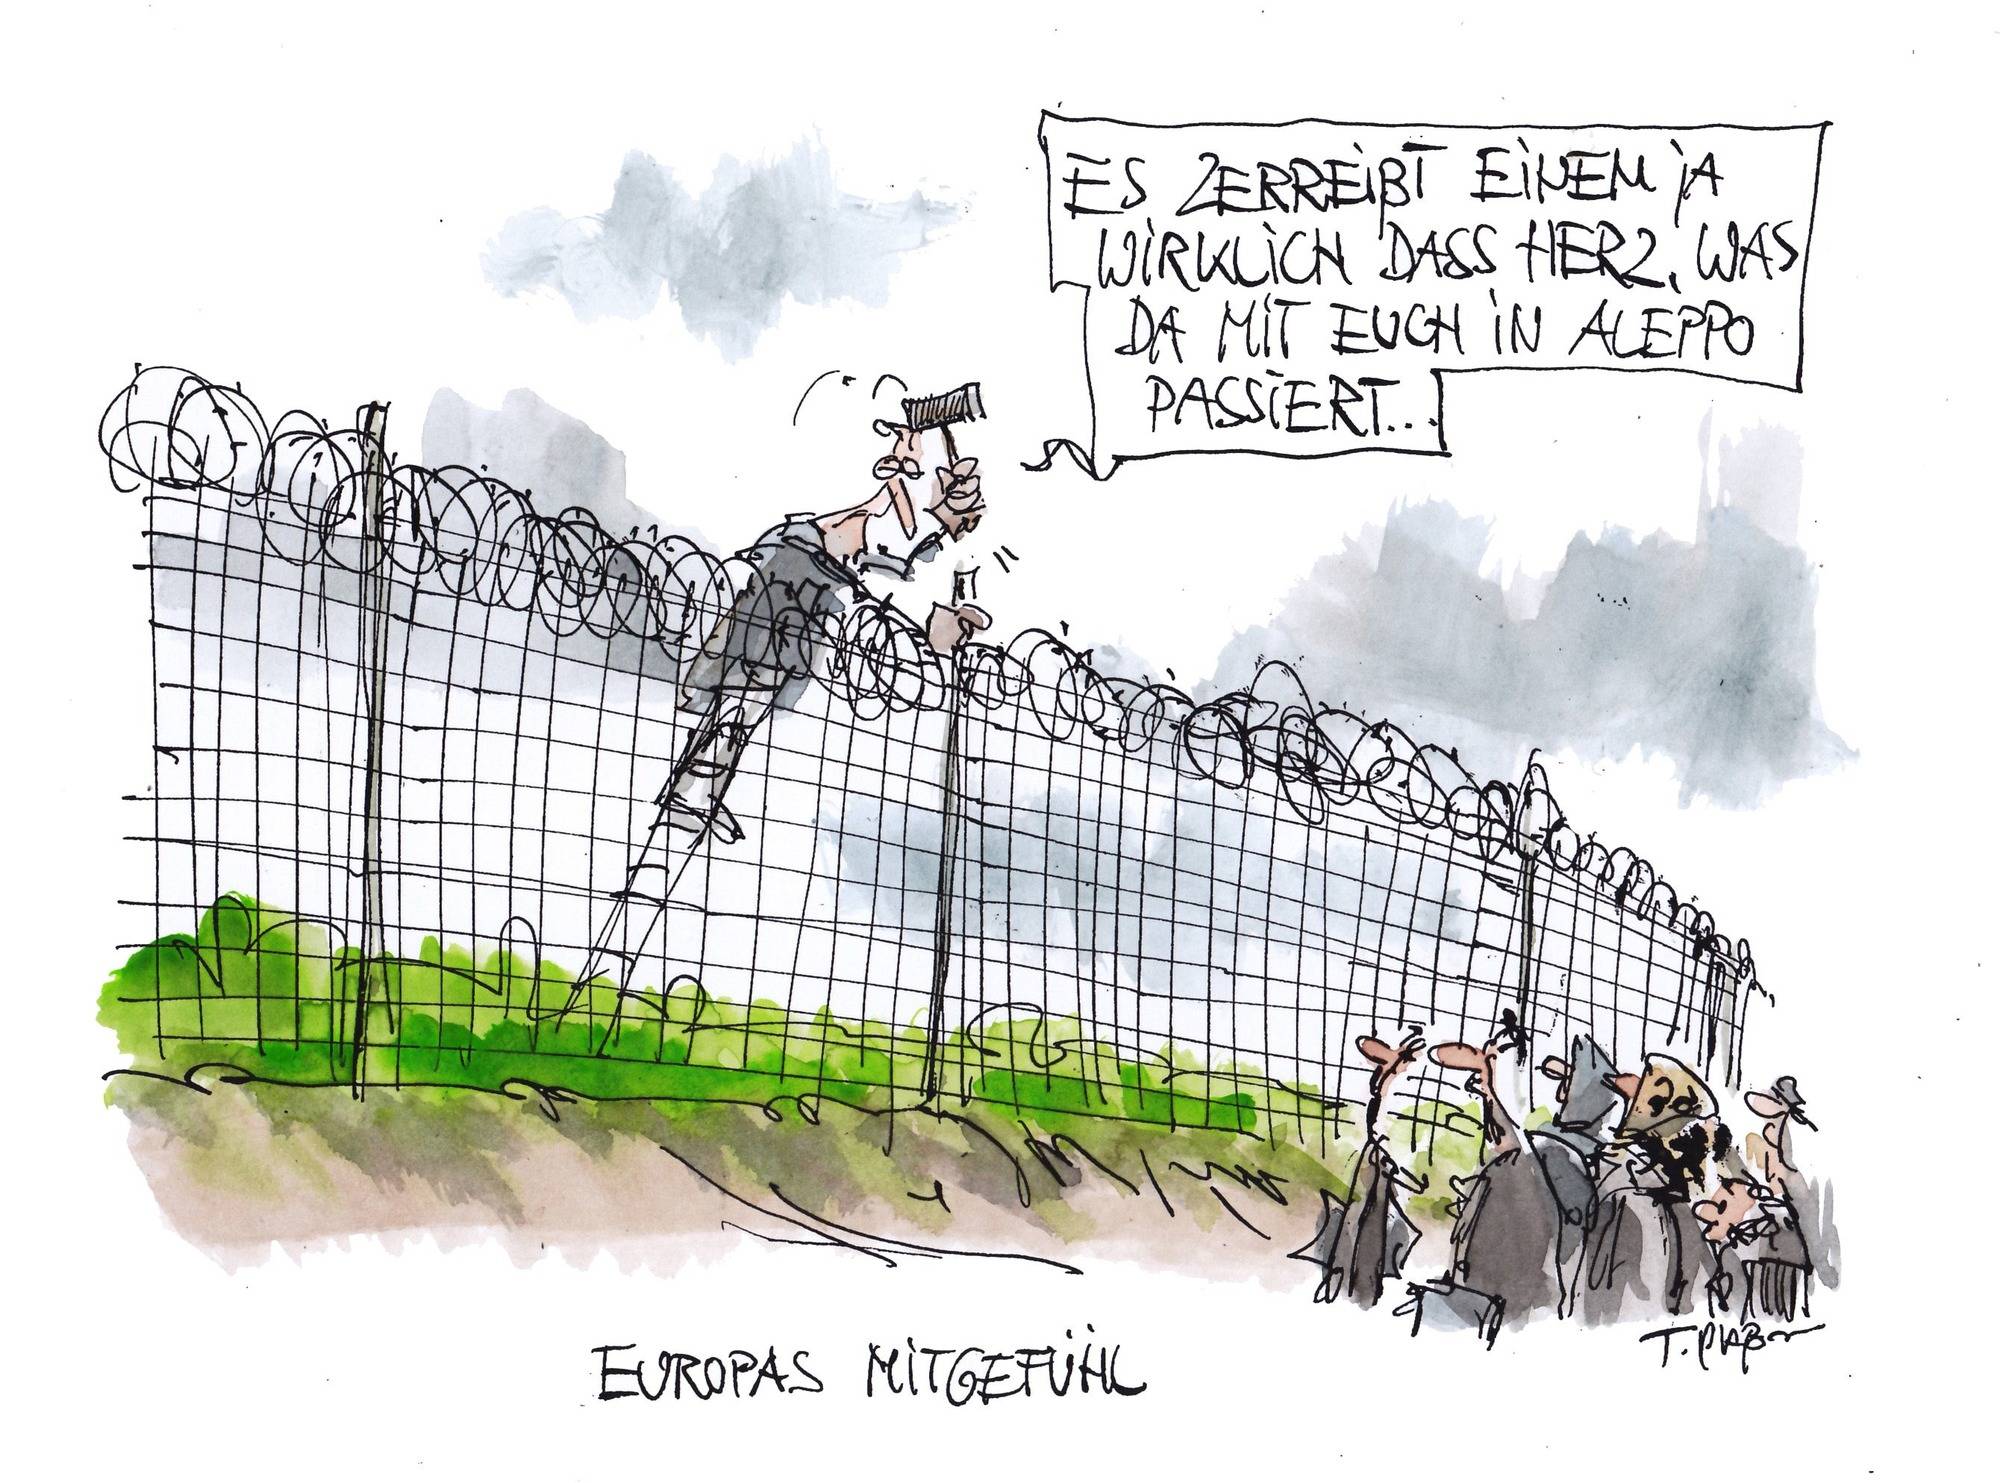 Fluchtlingshilfe Preisgekronte Karikaturen In Hardheimer Erftalhalle Zu Sehen Buchen Rnz